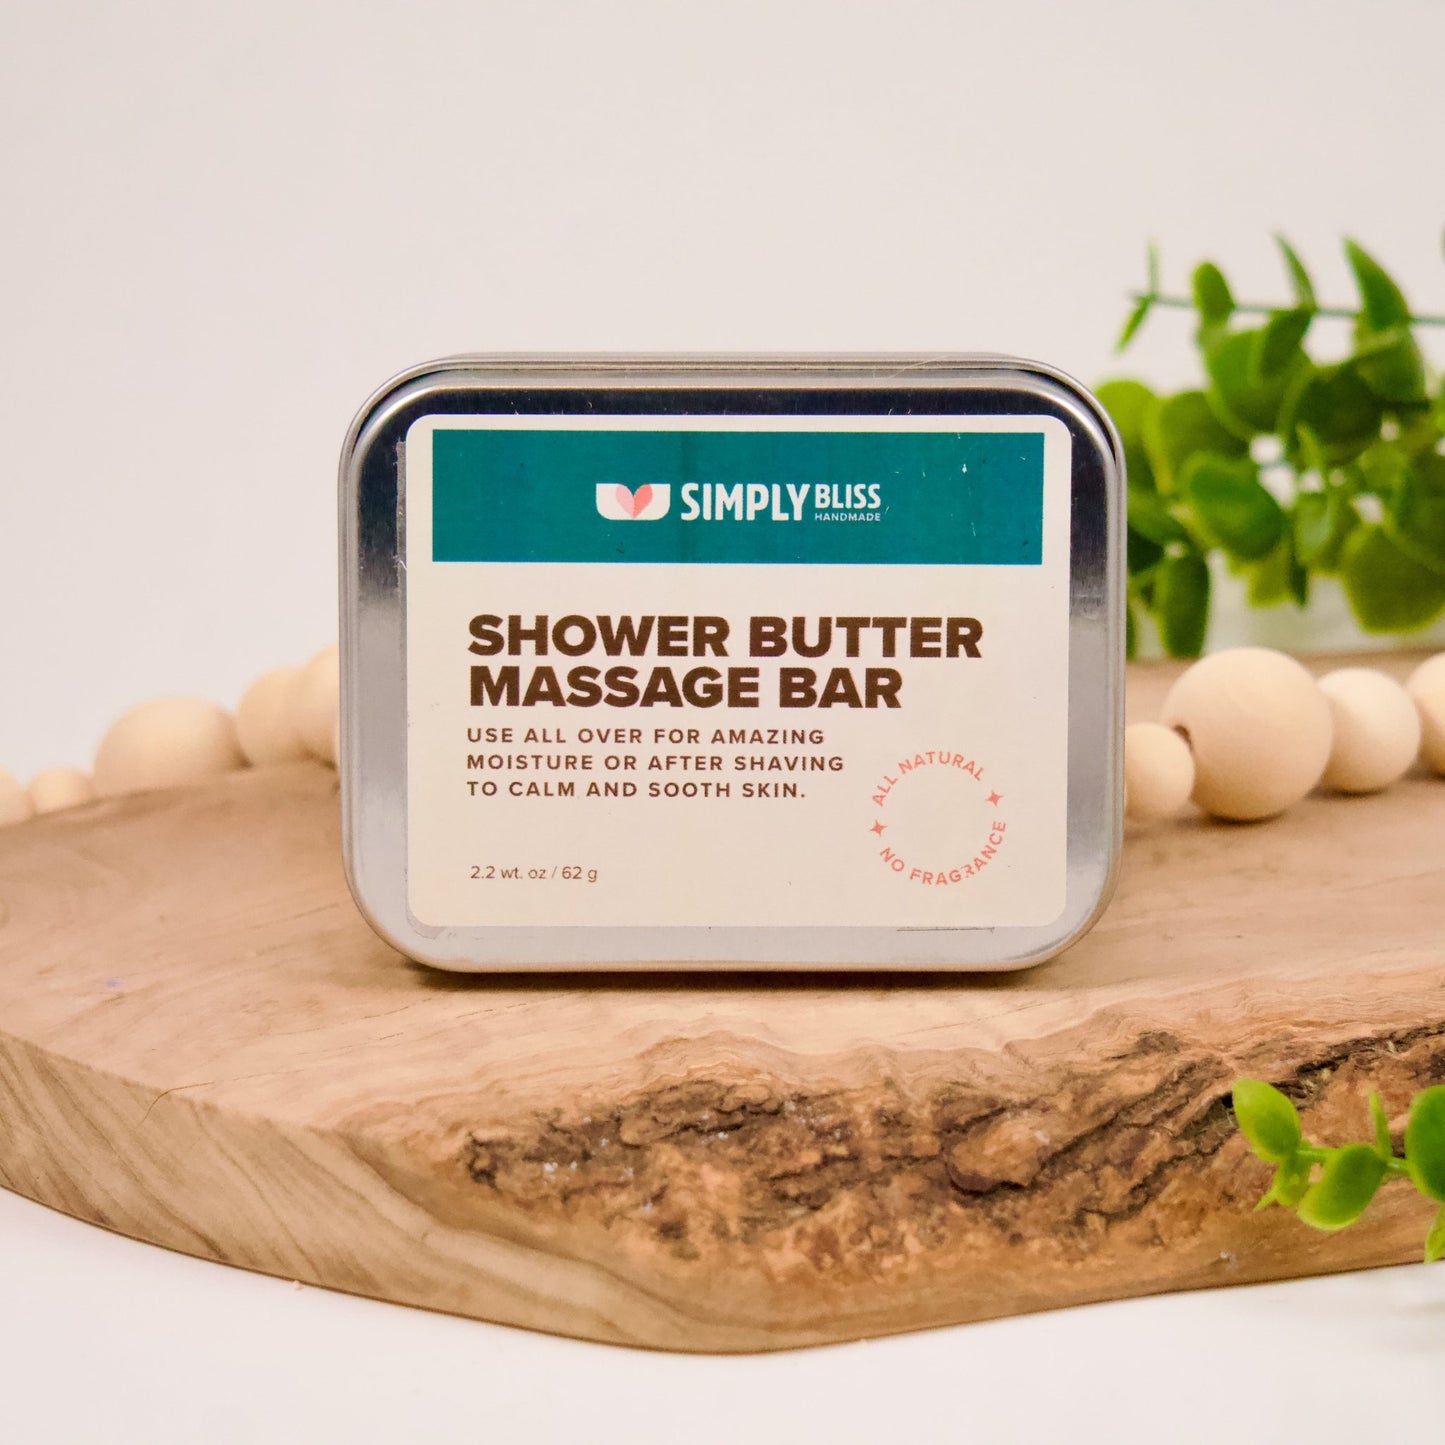 Shower Butter Massage Bar - Simply Bliss